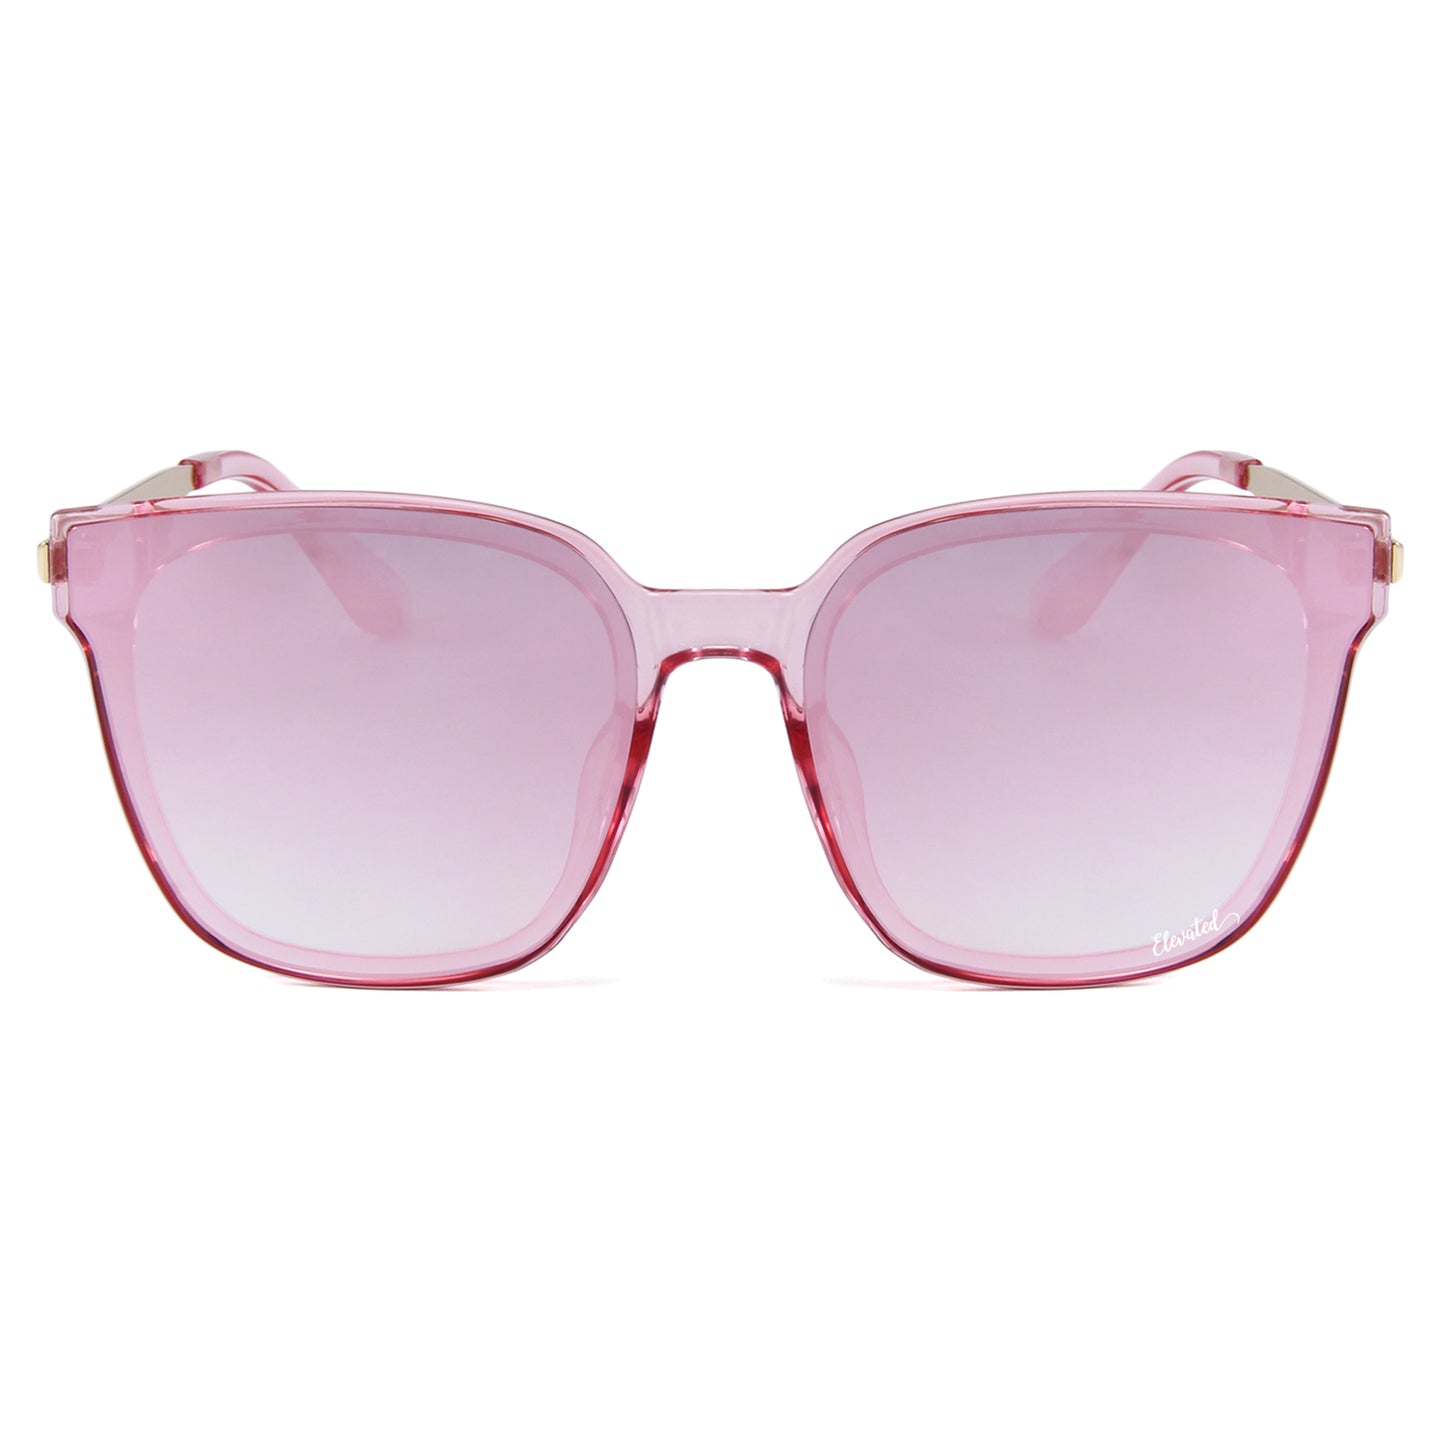 Elevated Shades - Strawberry Daze - Polarized Pink Lenses